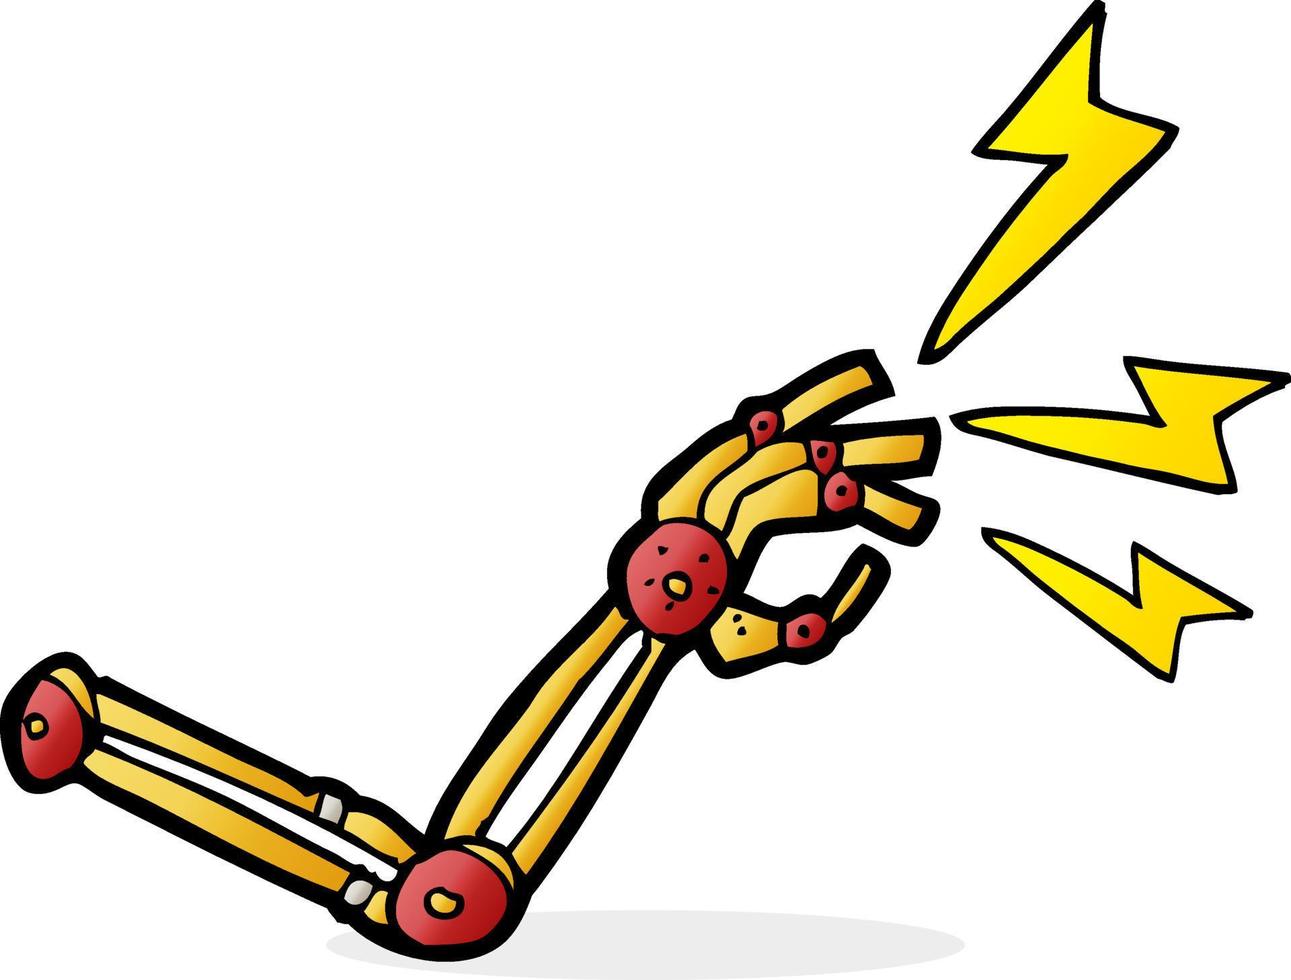 bras de robot de dessin animé vecteur